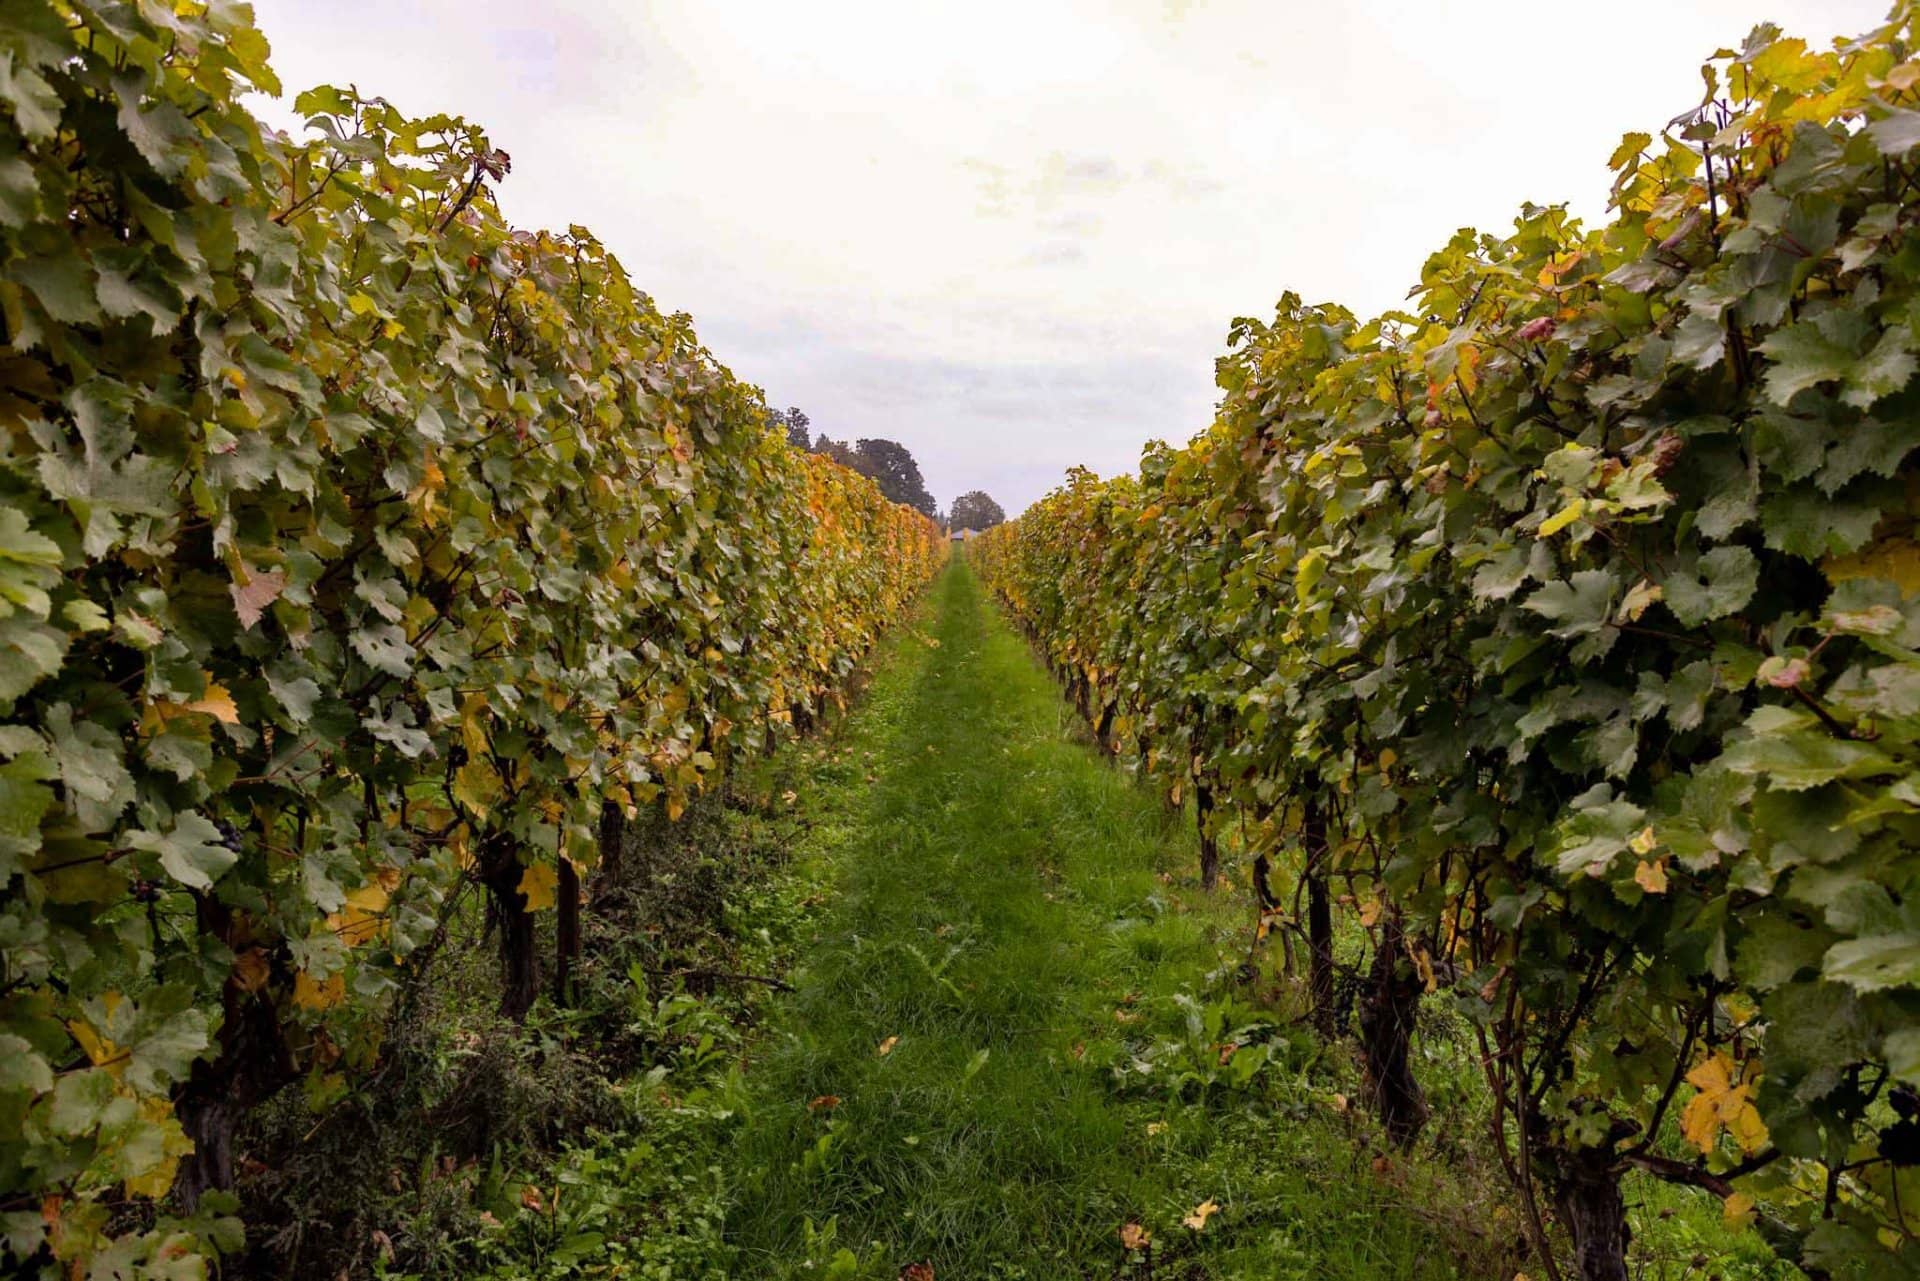 gound vines row oregon jubilee vineyard